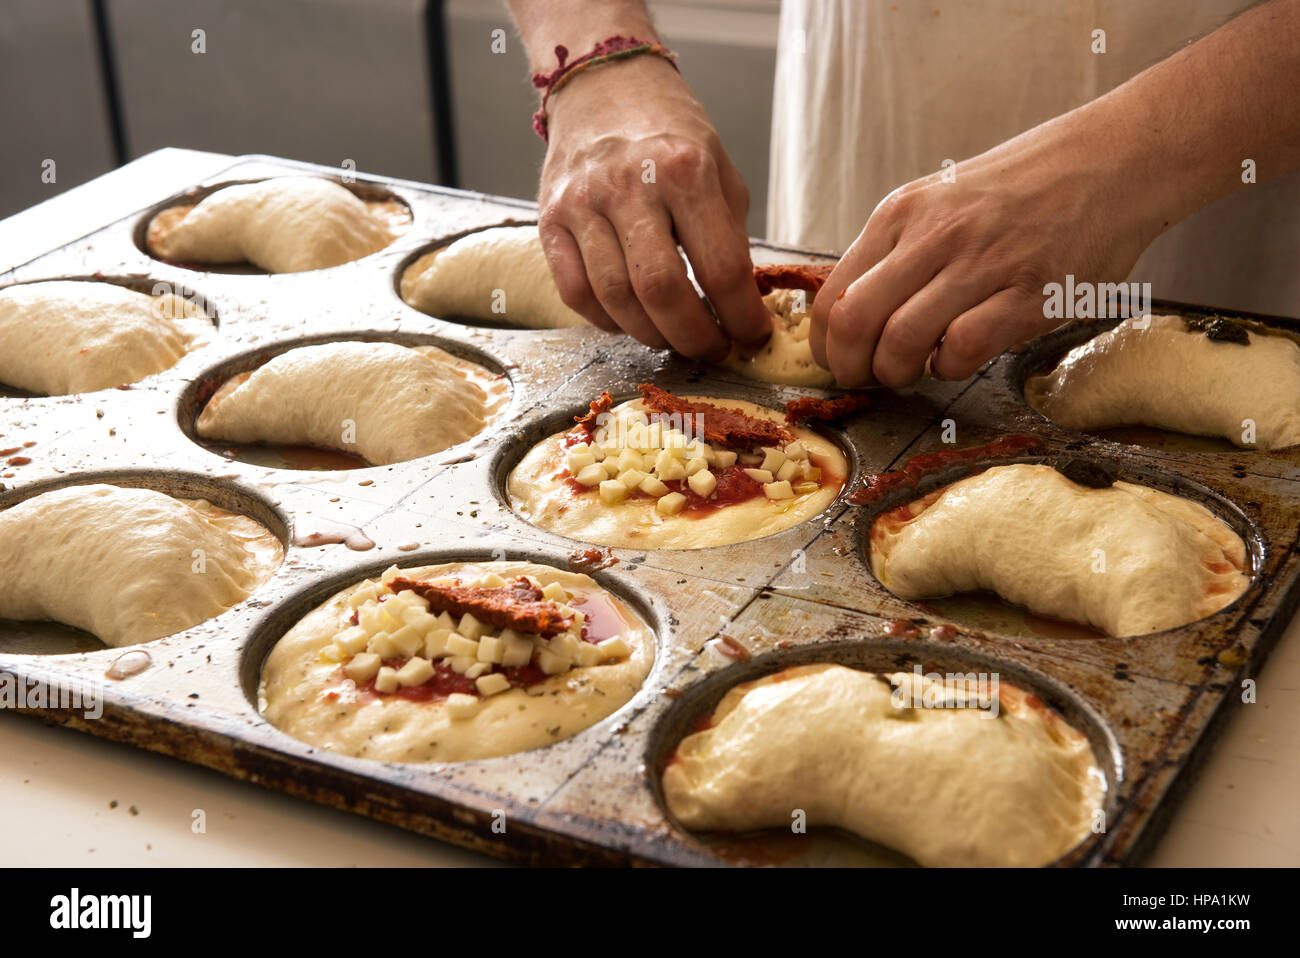 La cuisine italienne male chef mains en close-up pizza et panzerotti pizza fraîche du métal sur la plaque de cuisson Banque D'Images